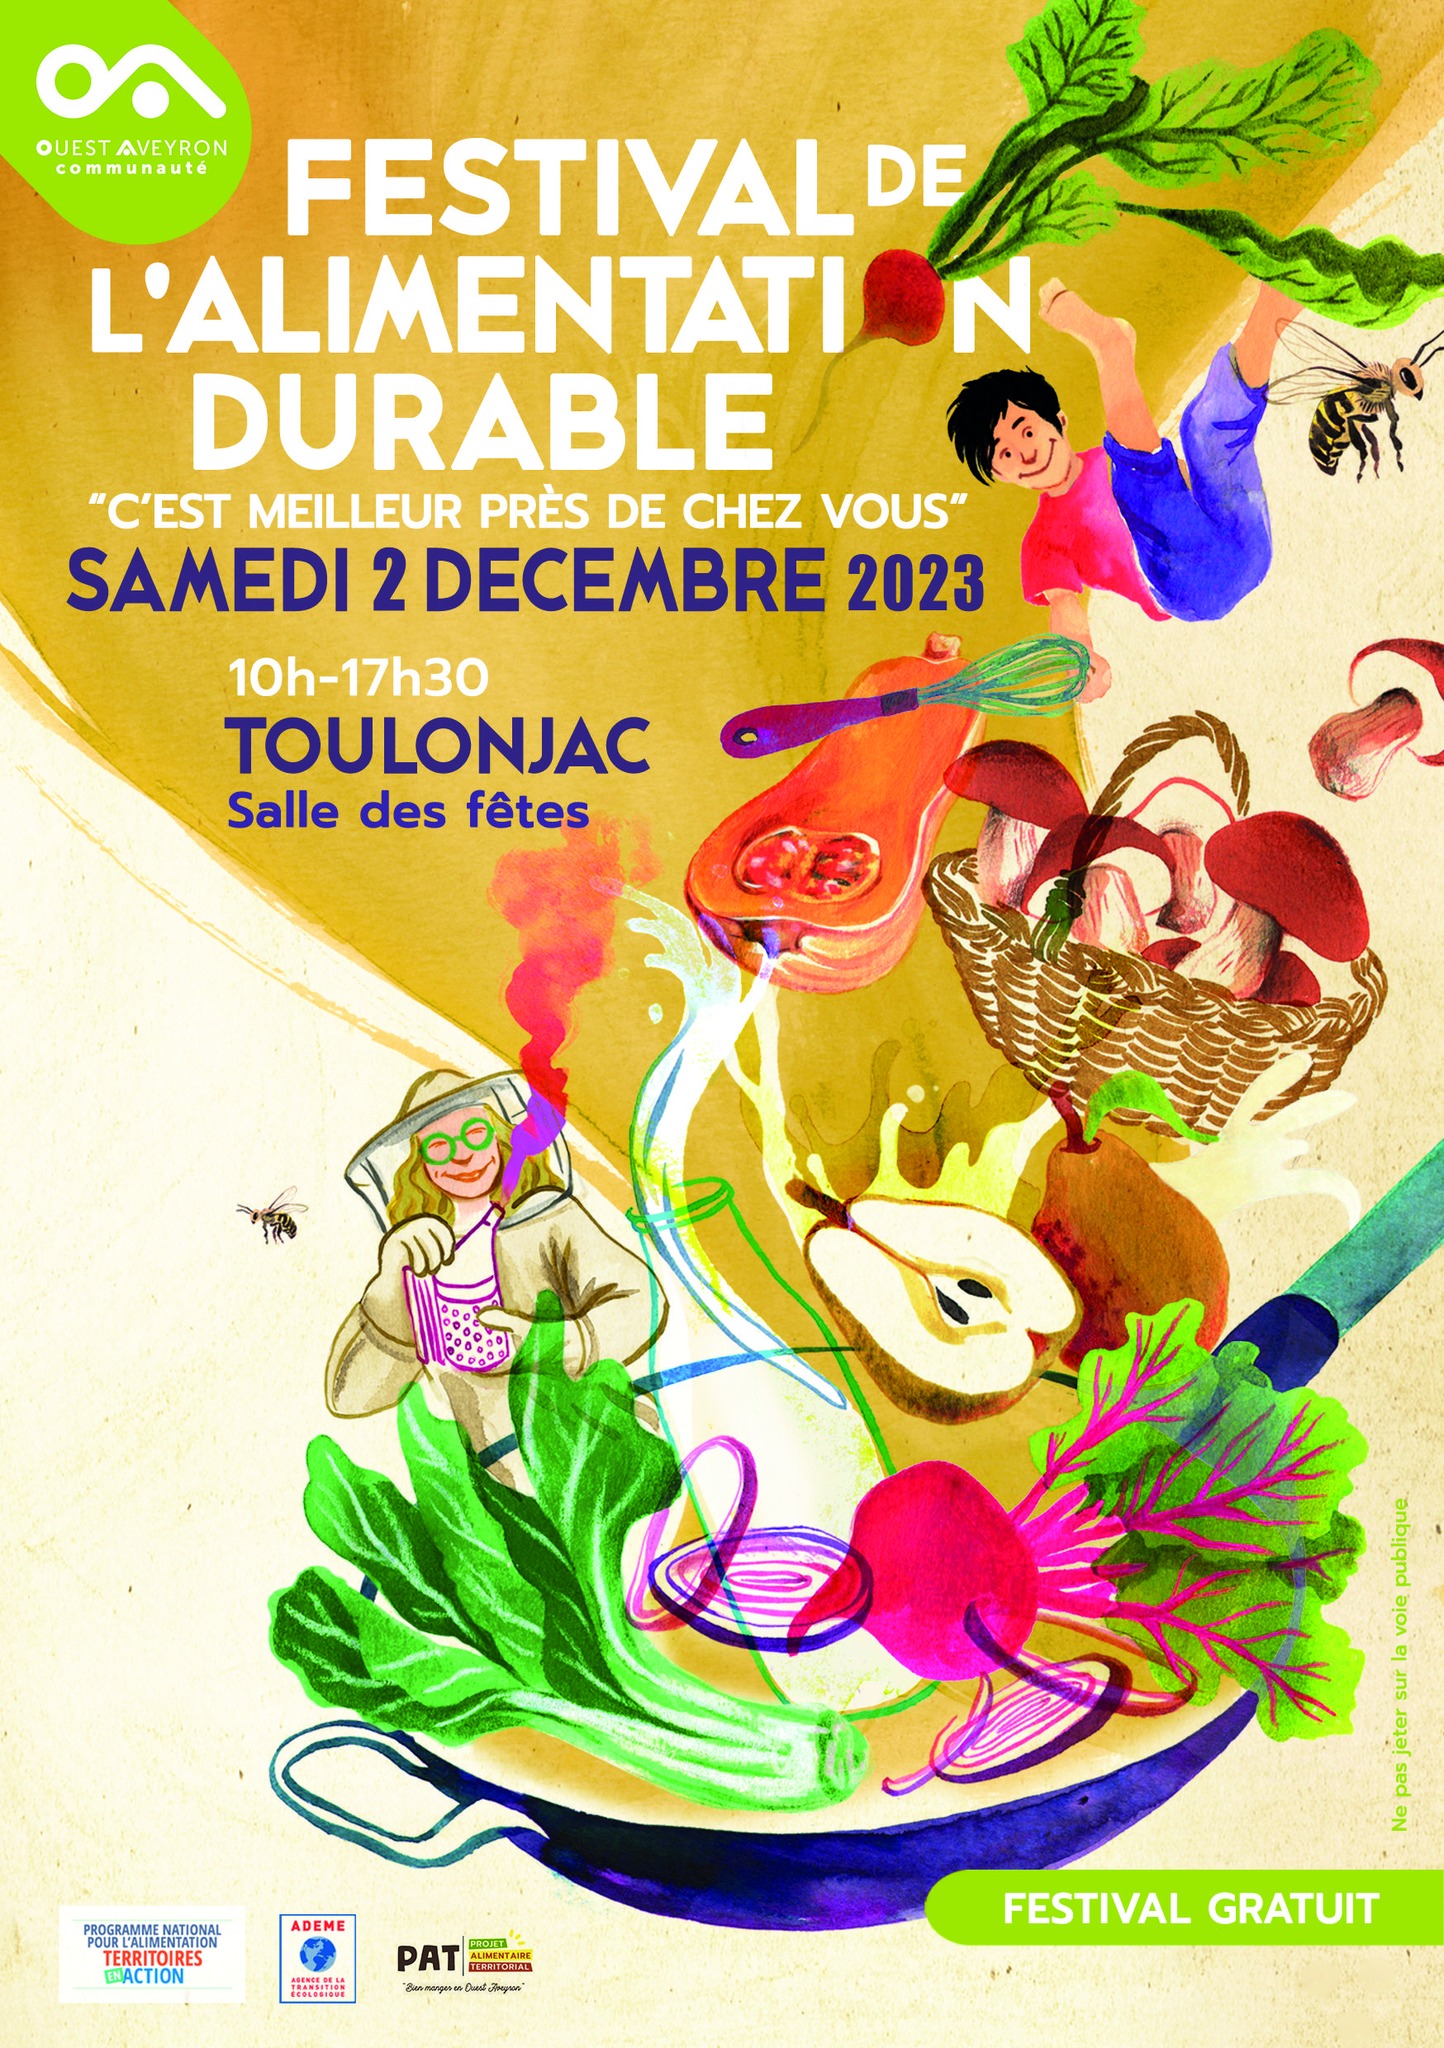 Festival de l’Alimentation Durable organisé par Ouestaveyroncommunauté à Toulonjac